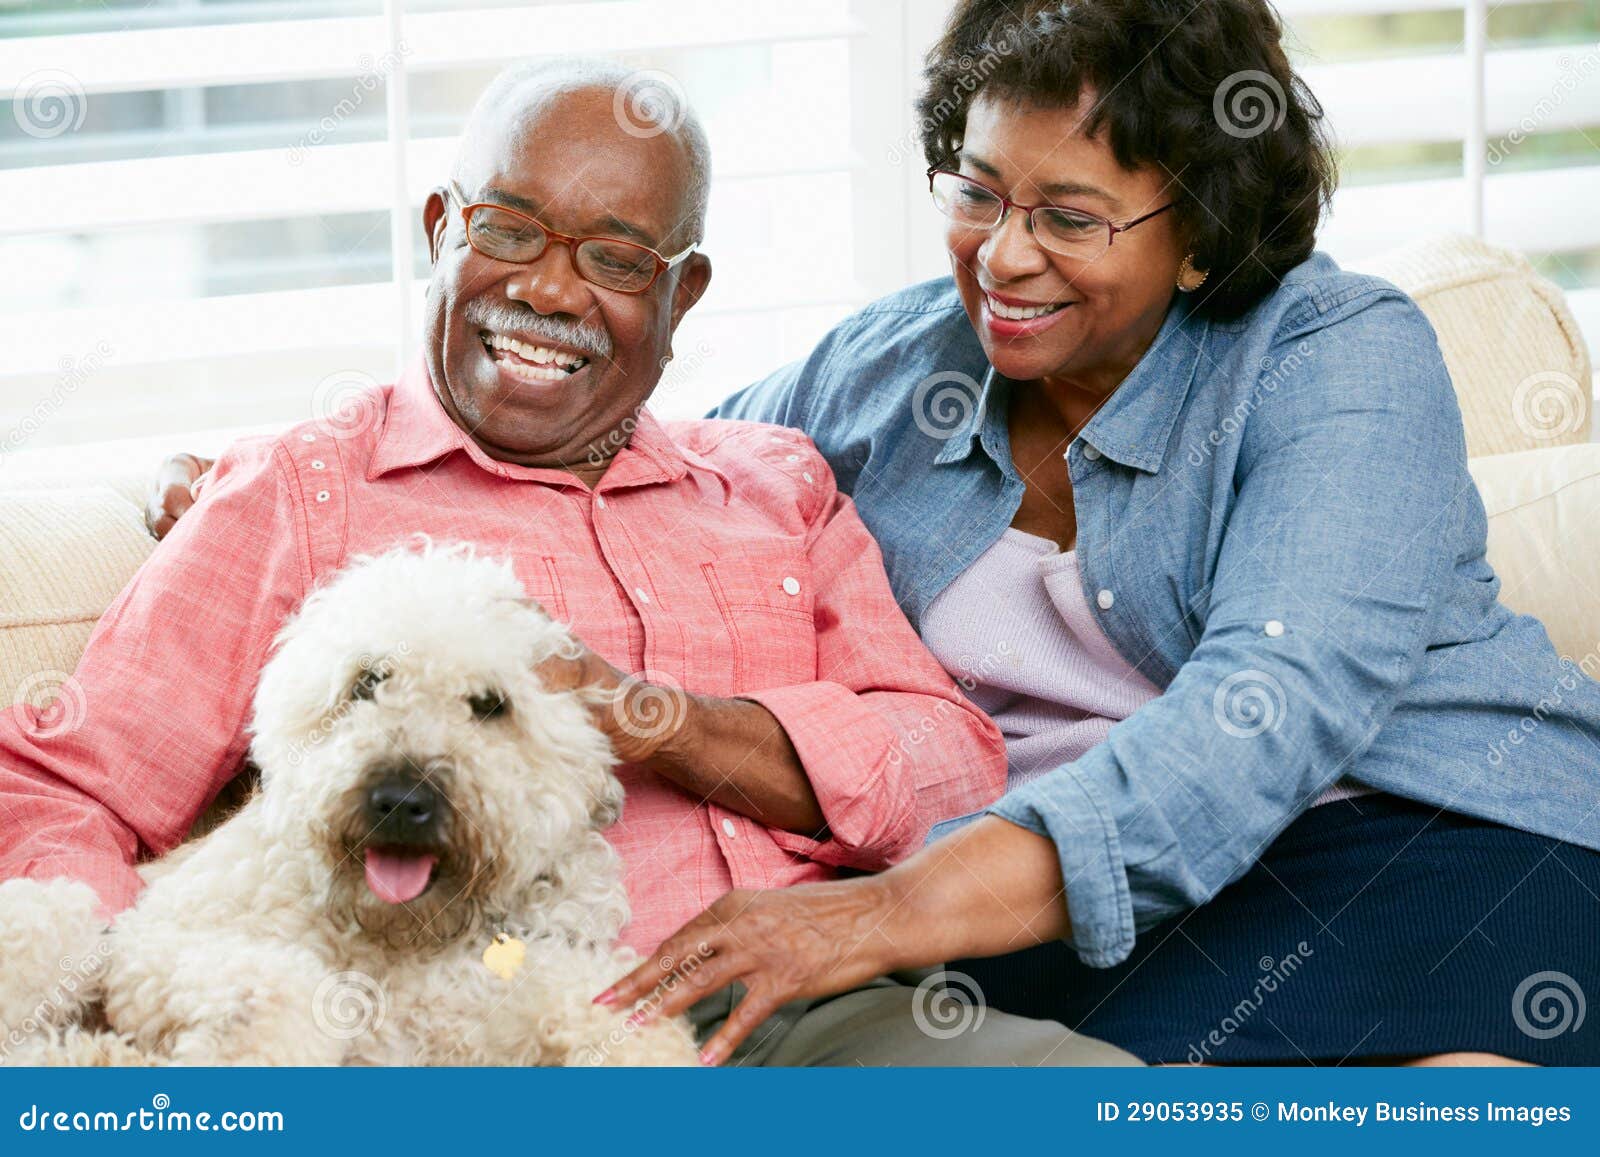 happy senior couple sitting on sofa with dog